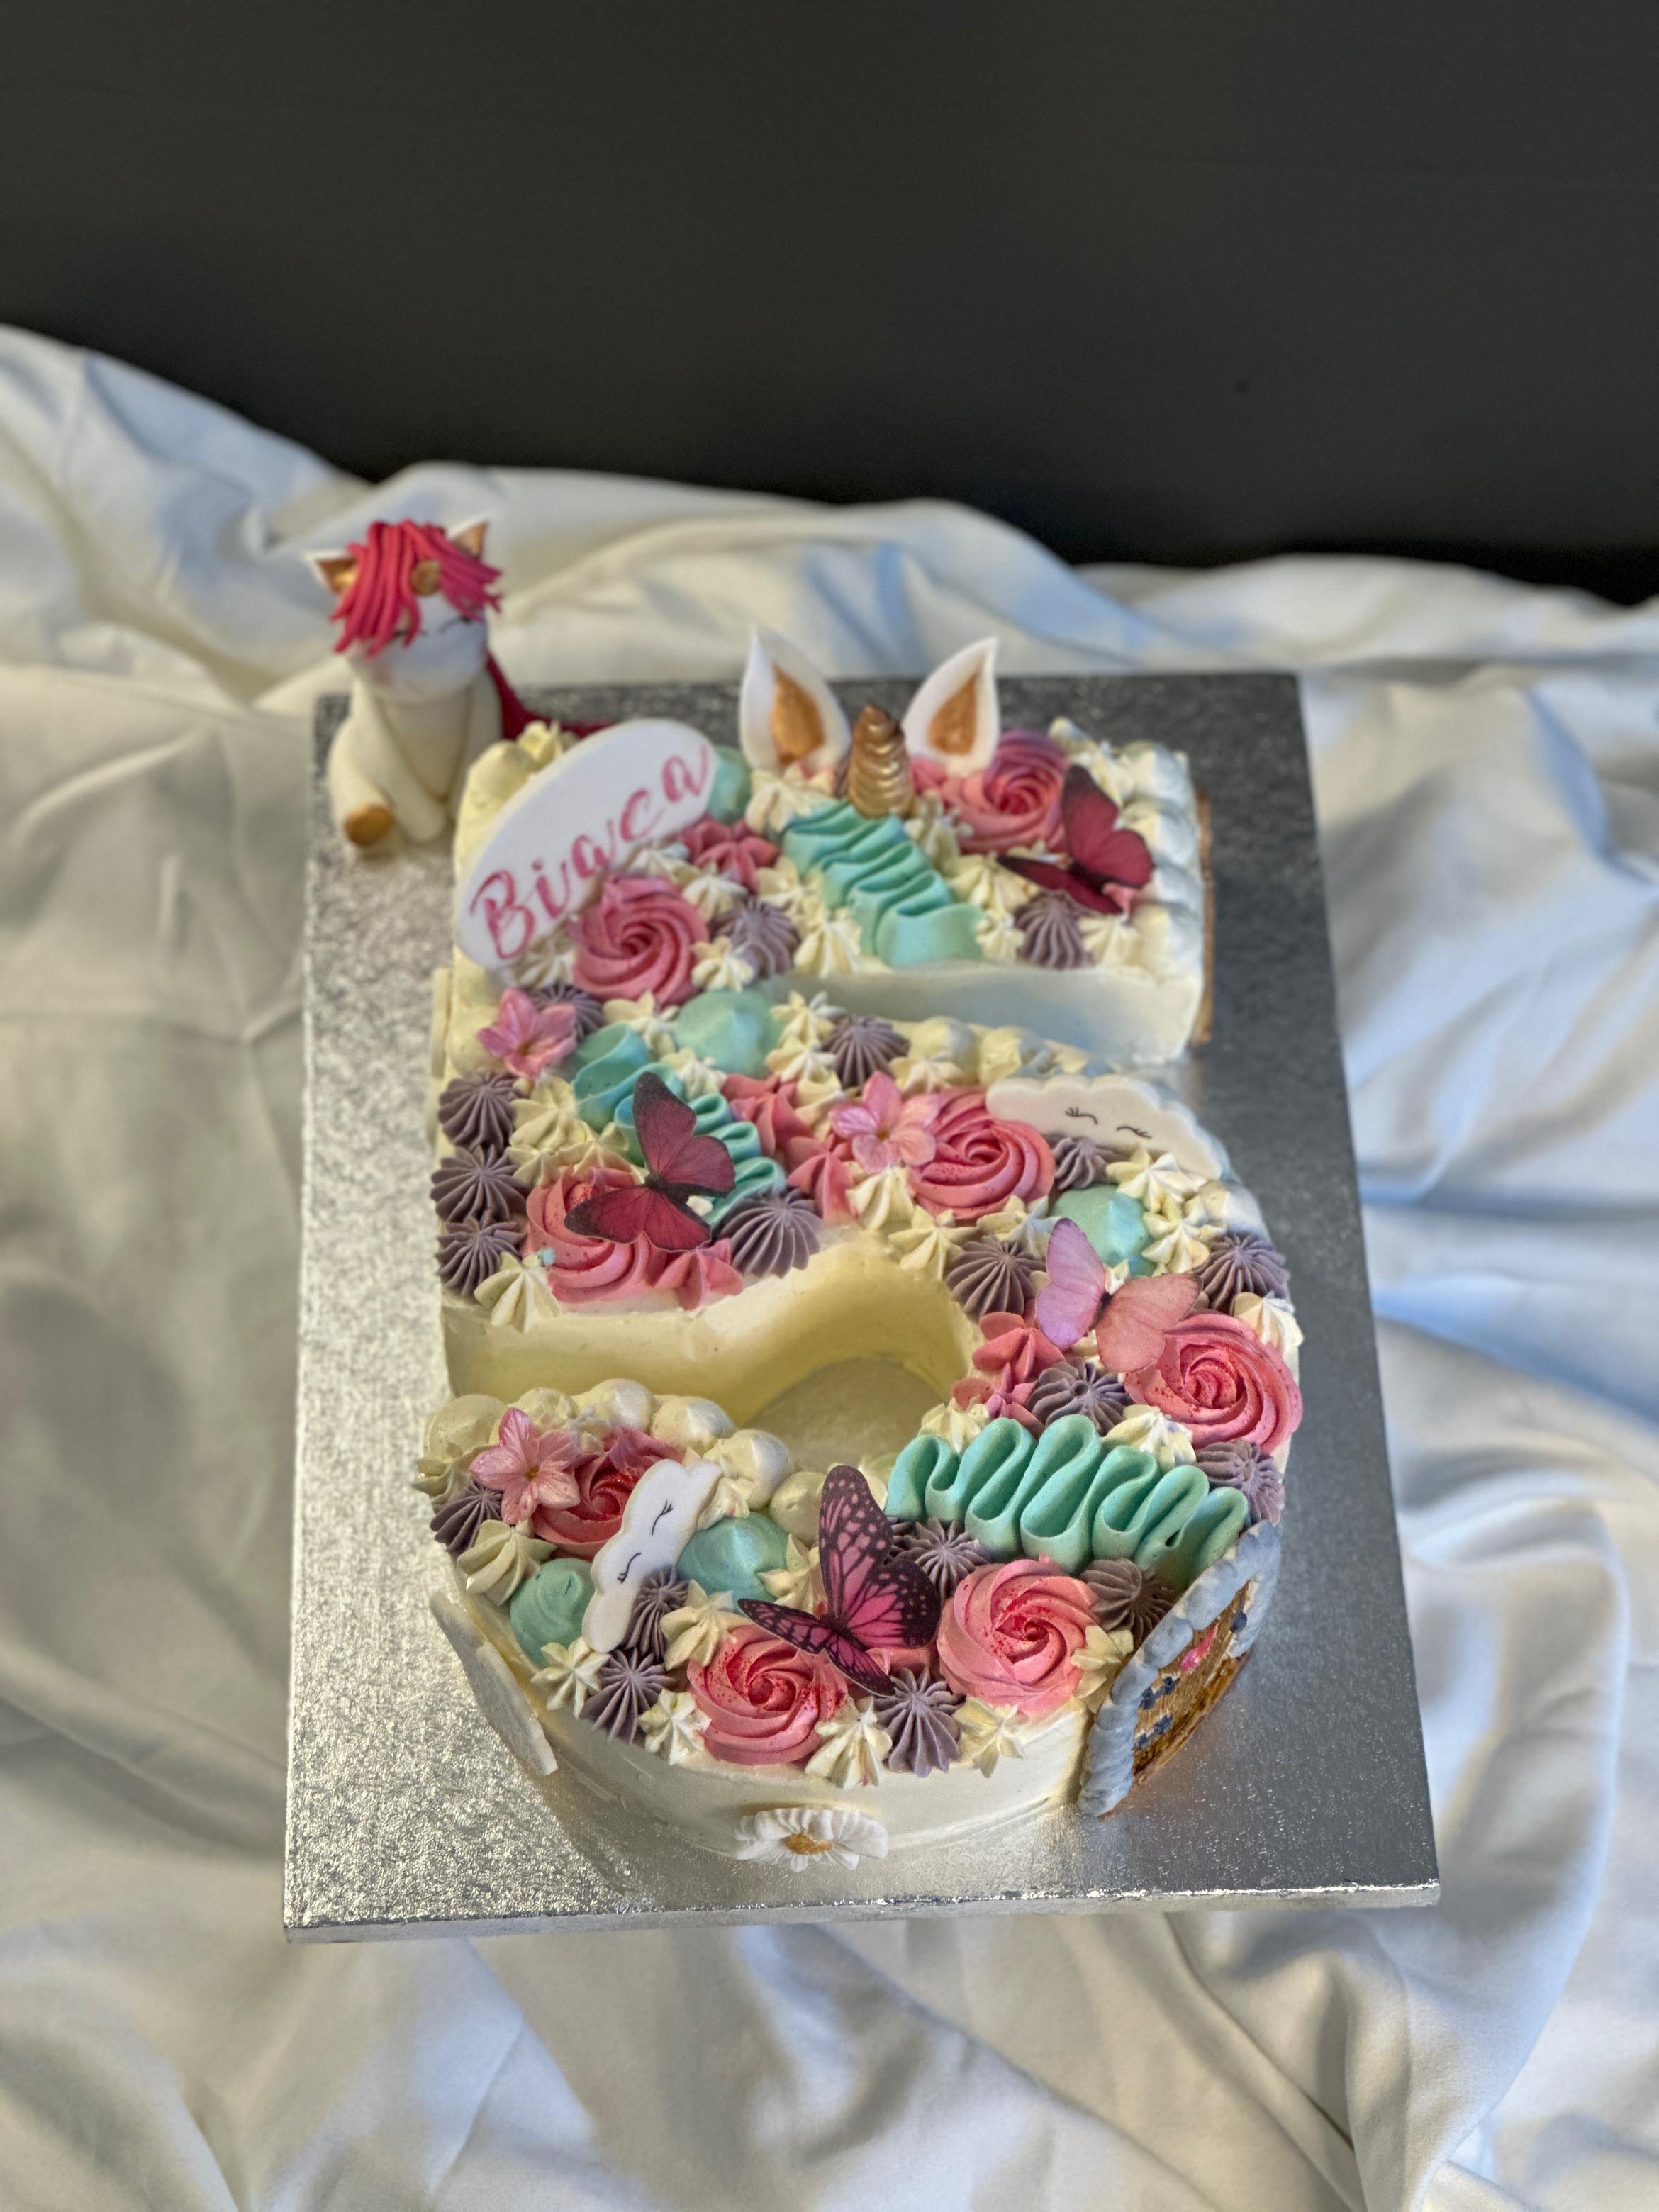 Millascakes Unicorn cake